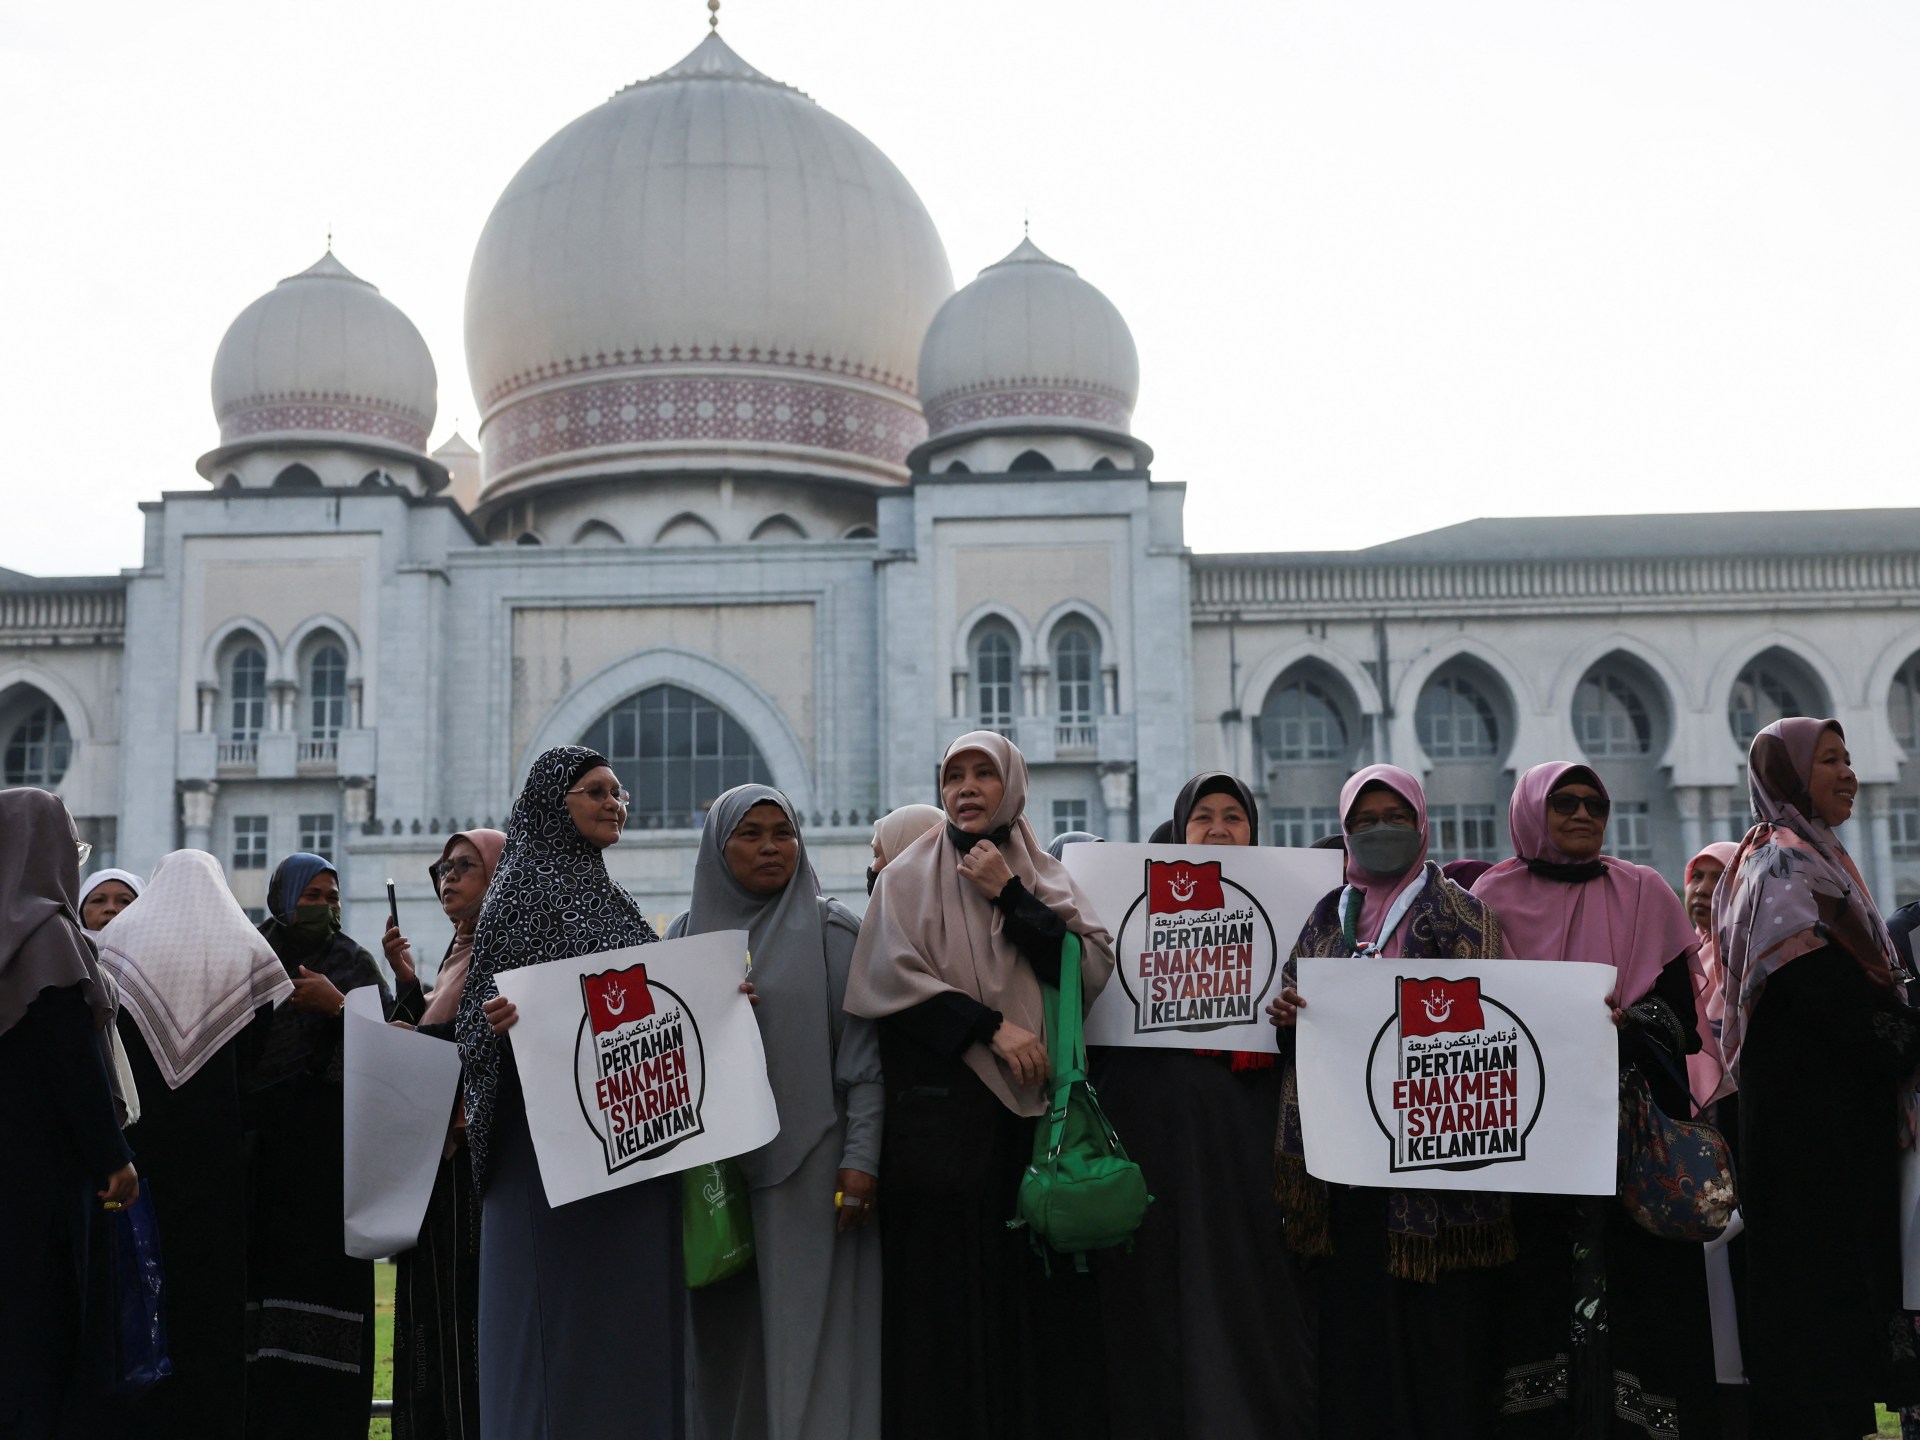 Mahkamah Agung Malaysia memutuskan bahwa beberapa hukum Islam di Kelantan tidak konstitusional |  Berita Pengadilan